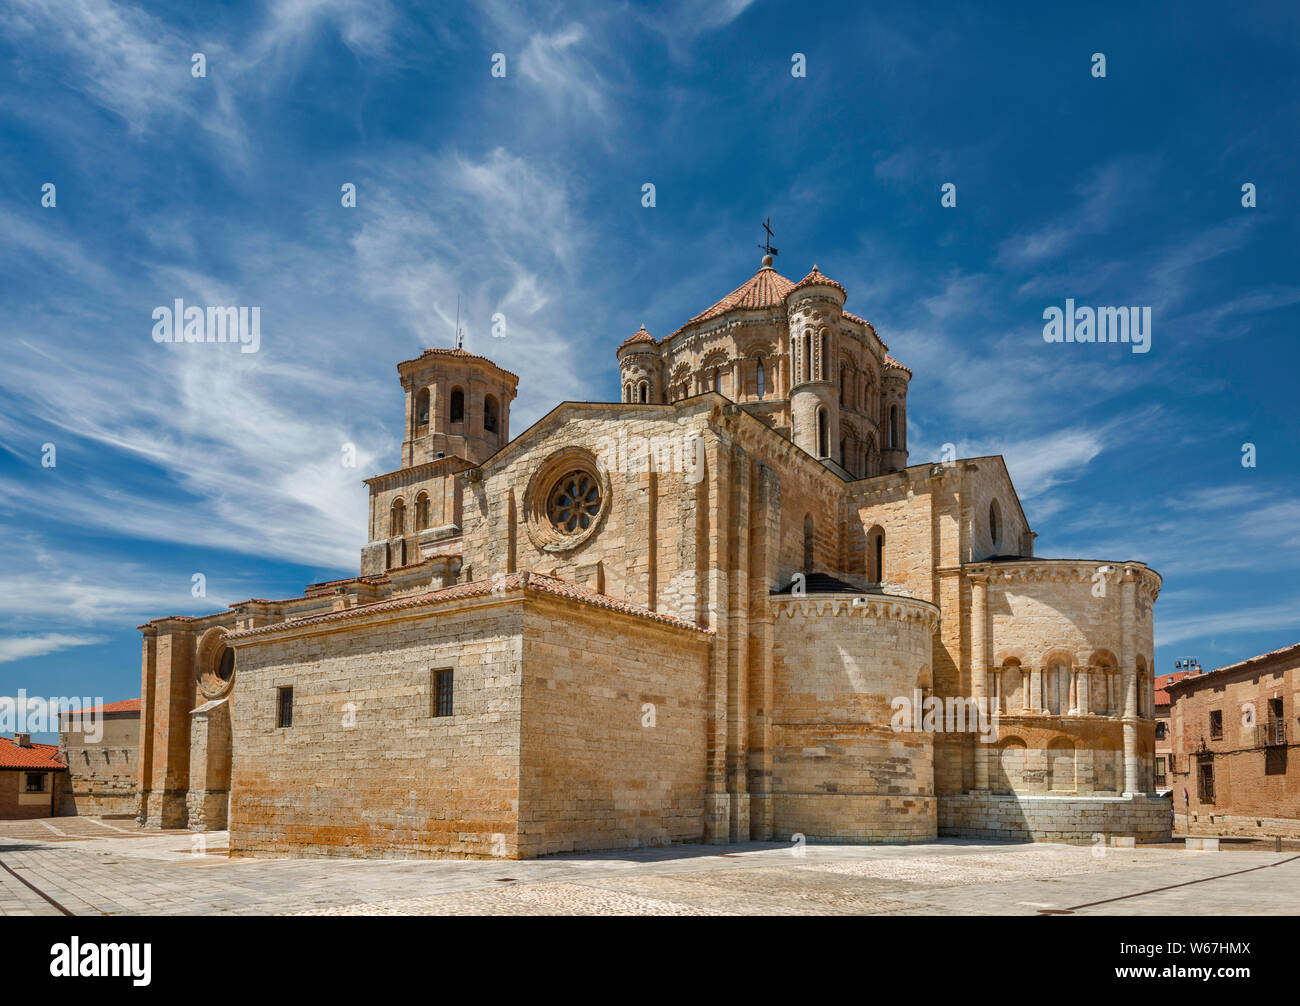 Colegiata de Santa Maria La Mayor, 12th century, Romanesque style collegiate church, in Toro, Zamora Province, Castilla y Leon, Spain Stock Photo